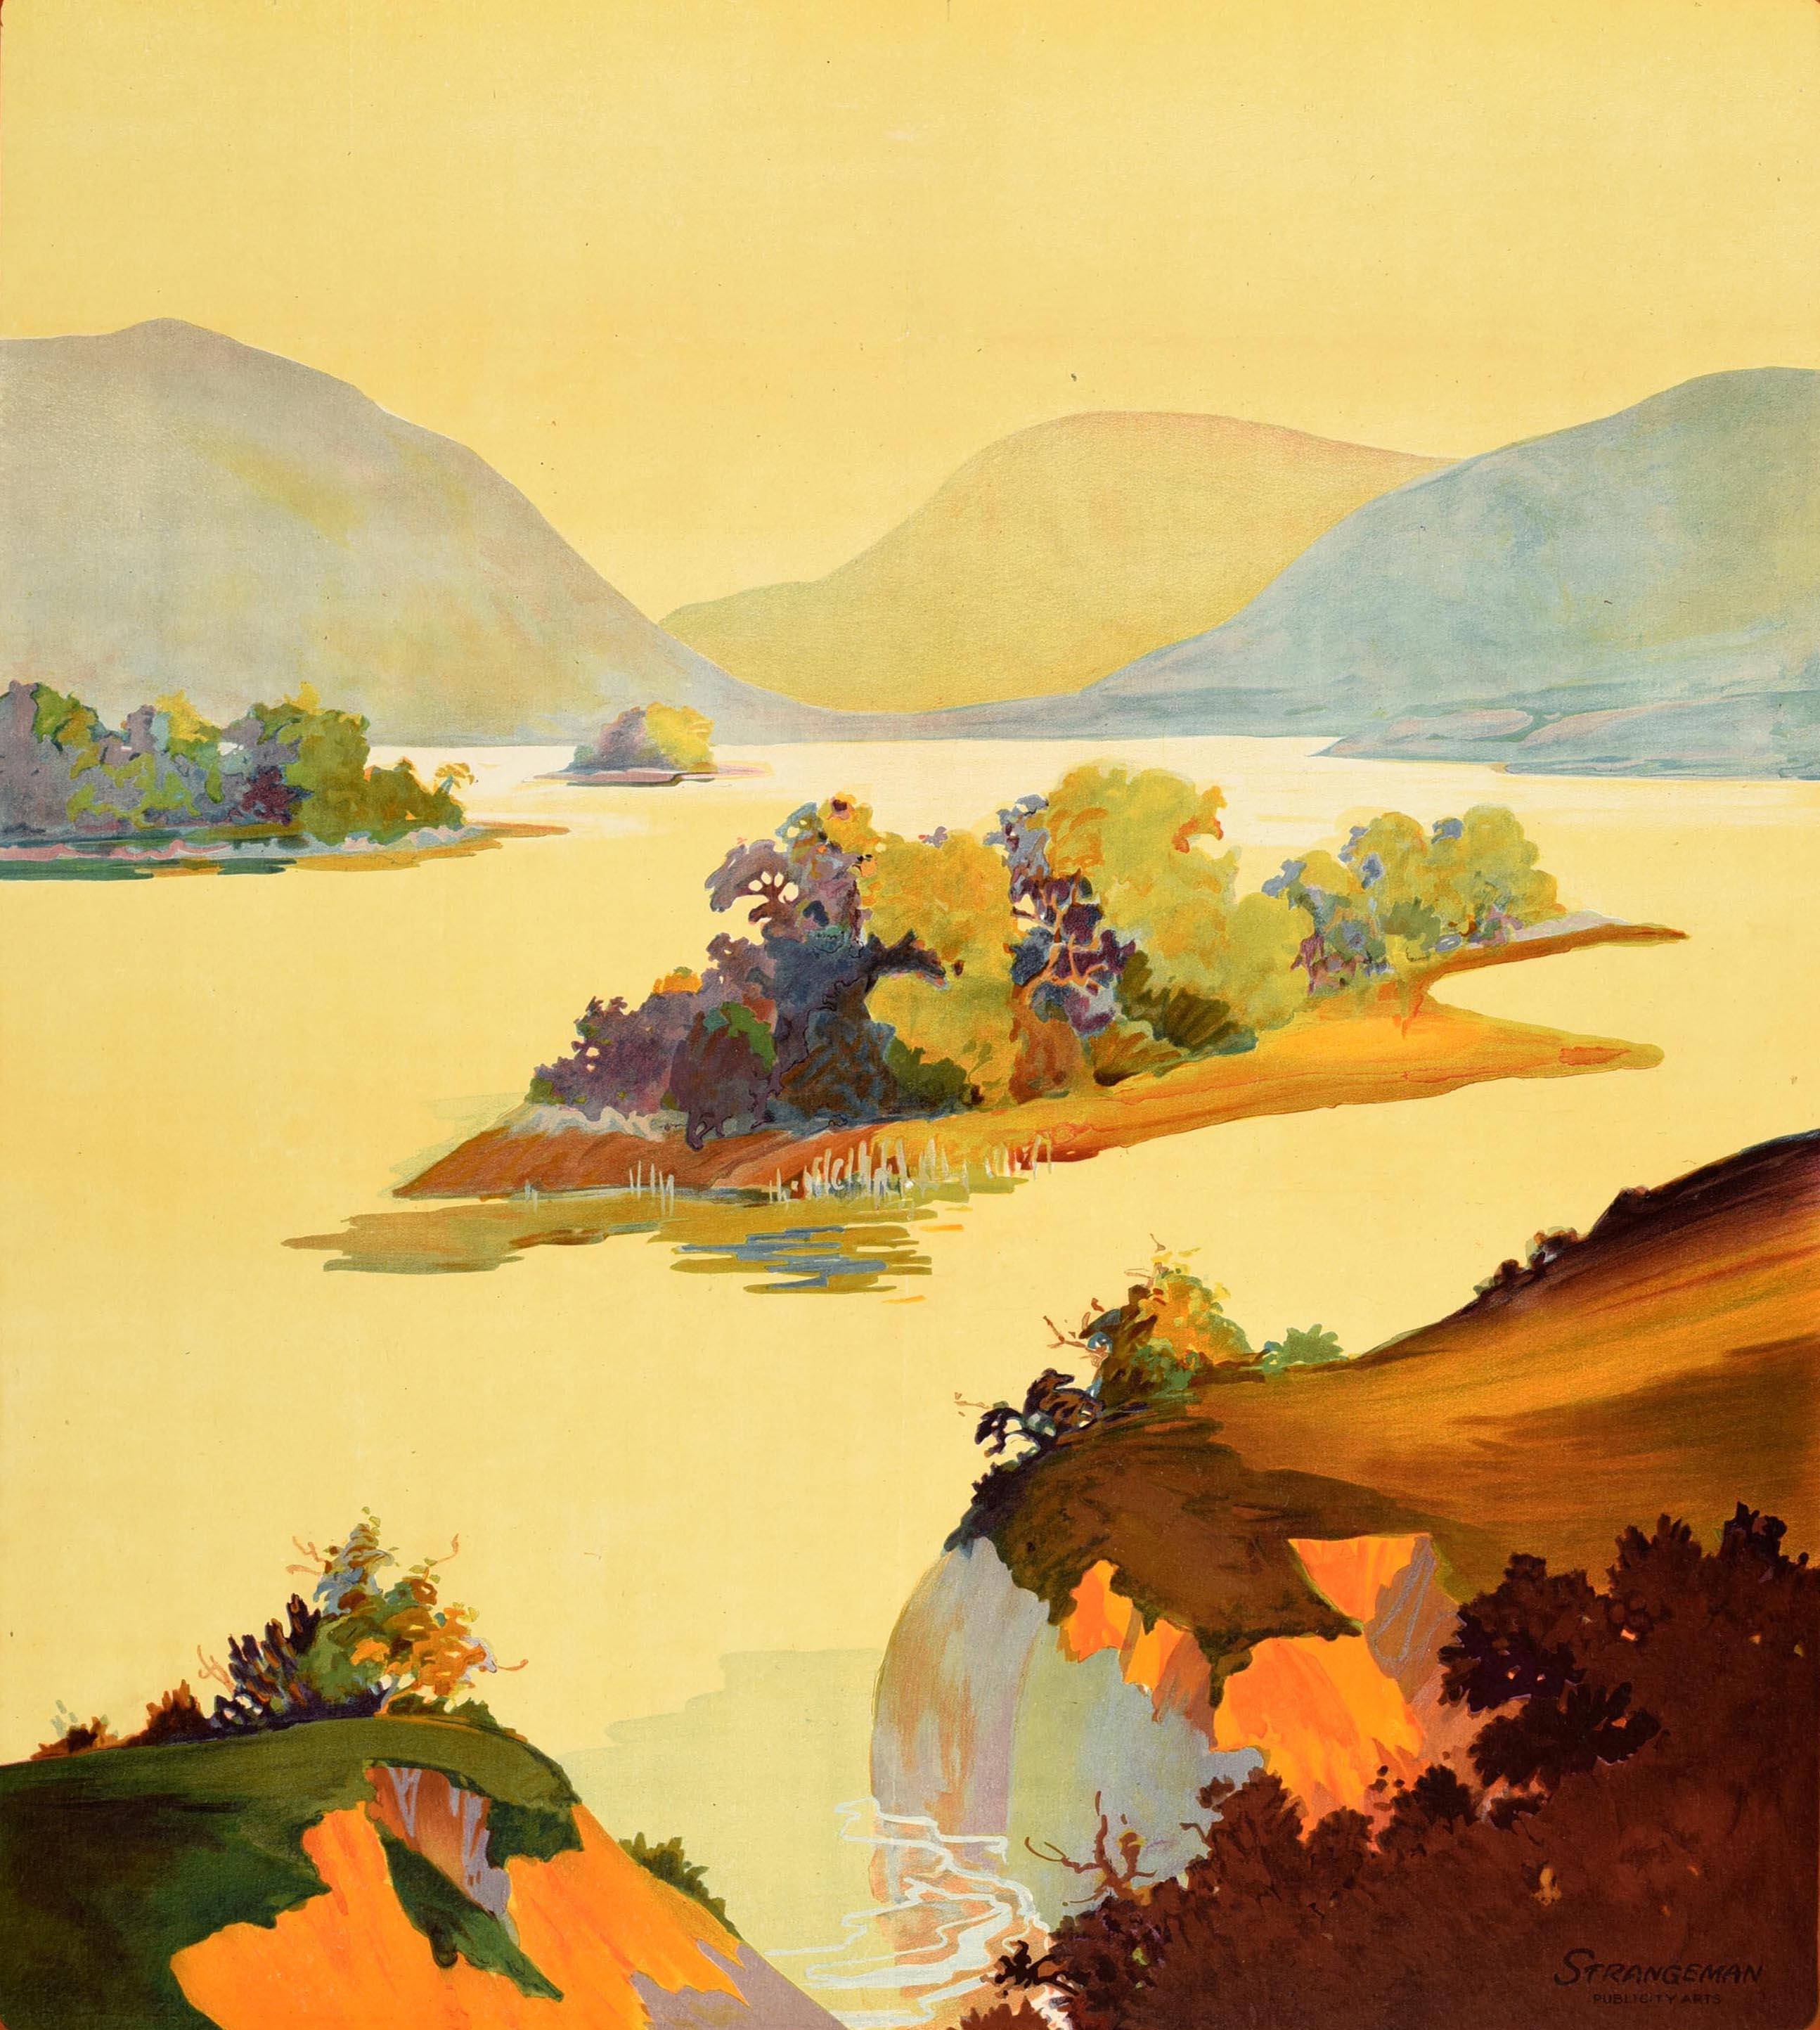 Original Vintage-Reiseplakat für Irland - Come Back to Erin - von Anchor Line New York and Londonderry - Das Motiv zeigt eine Seeszene mit sanften Hügeln im Hintergrund, eingerahmt von einem kastanienbraunen Rahmen mit weißer und grüner Schrift.